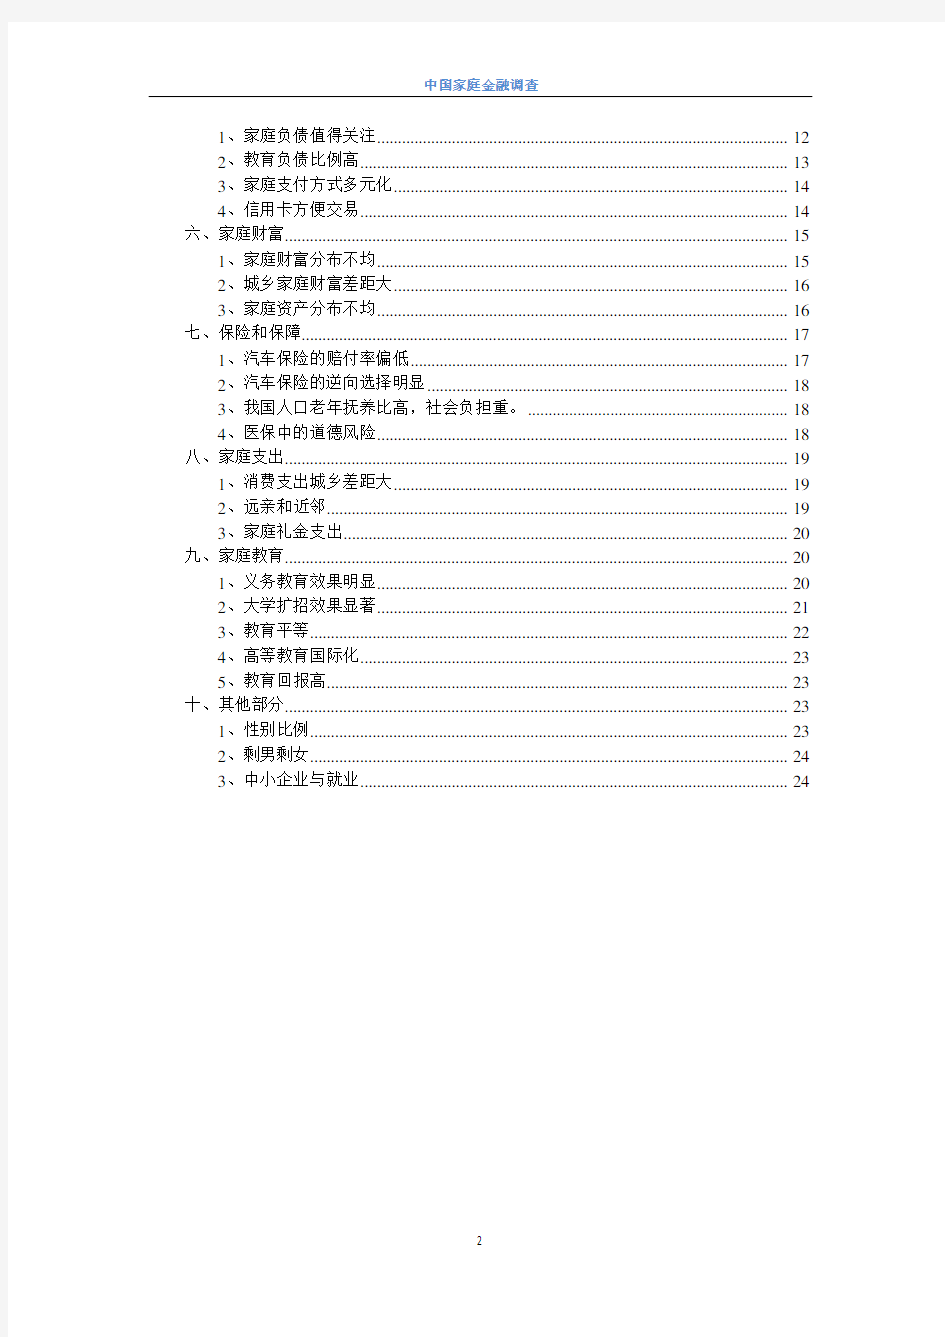 (完整版)中国家庭金融调查报告